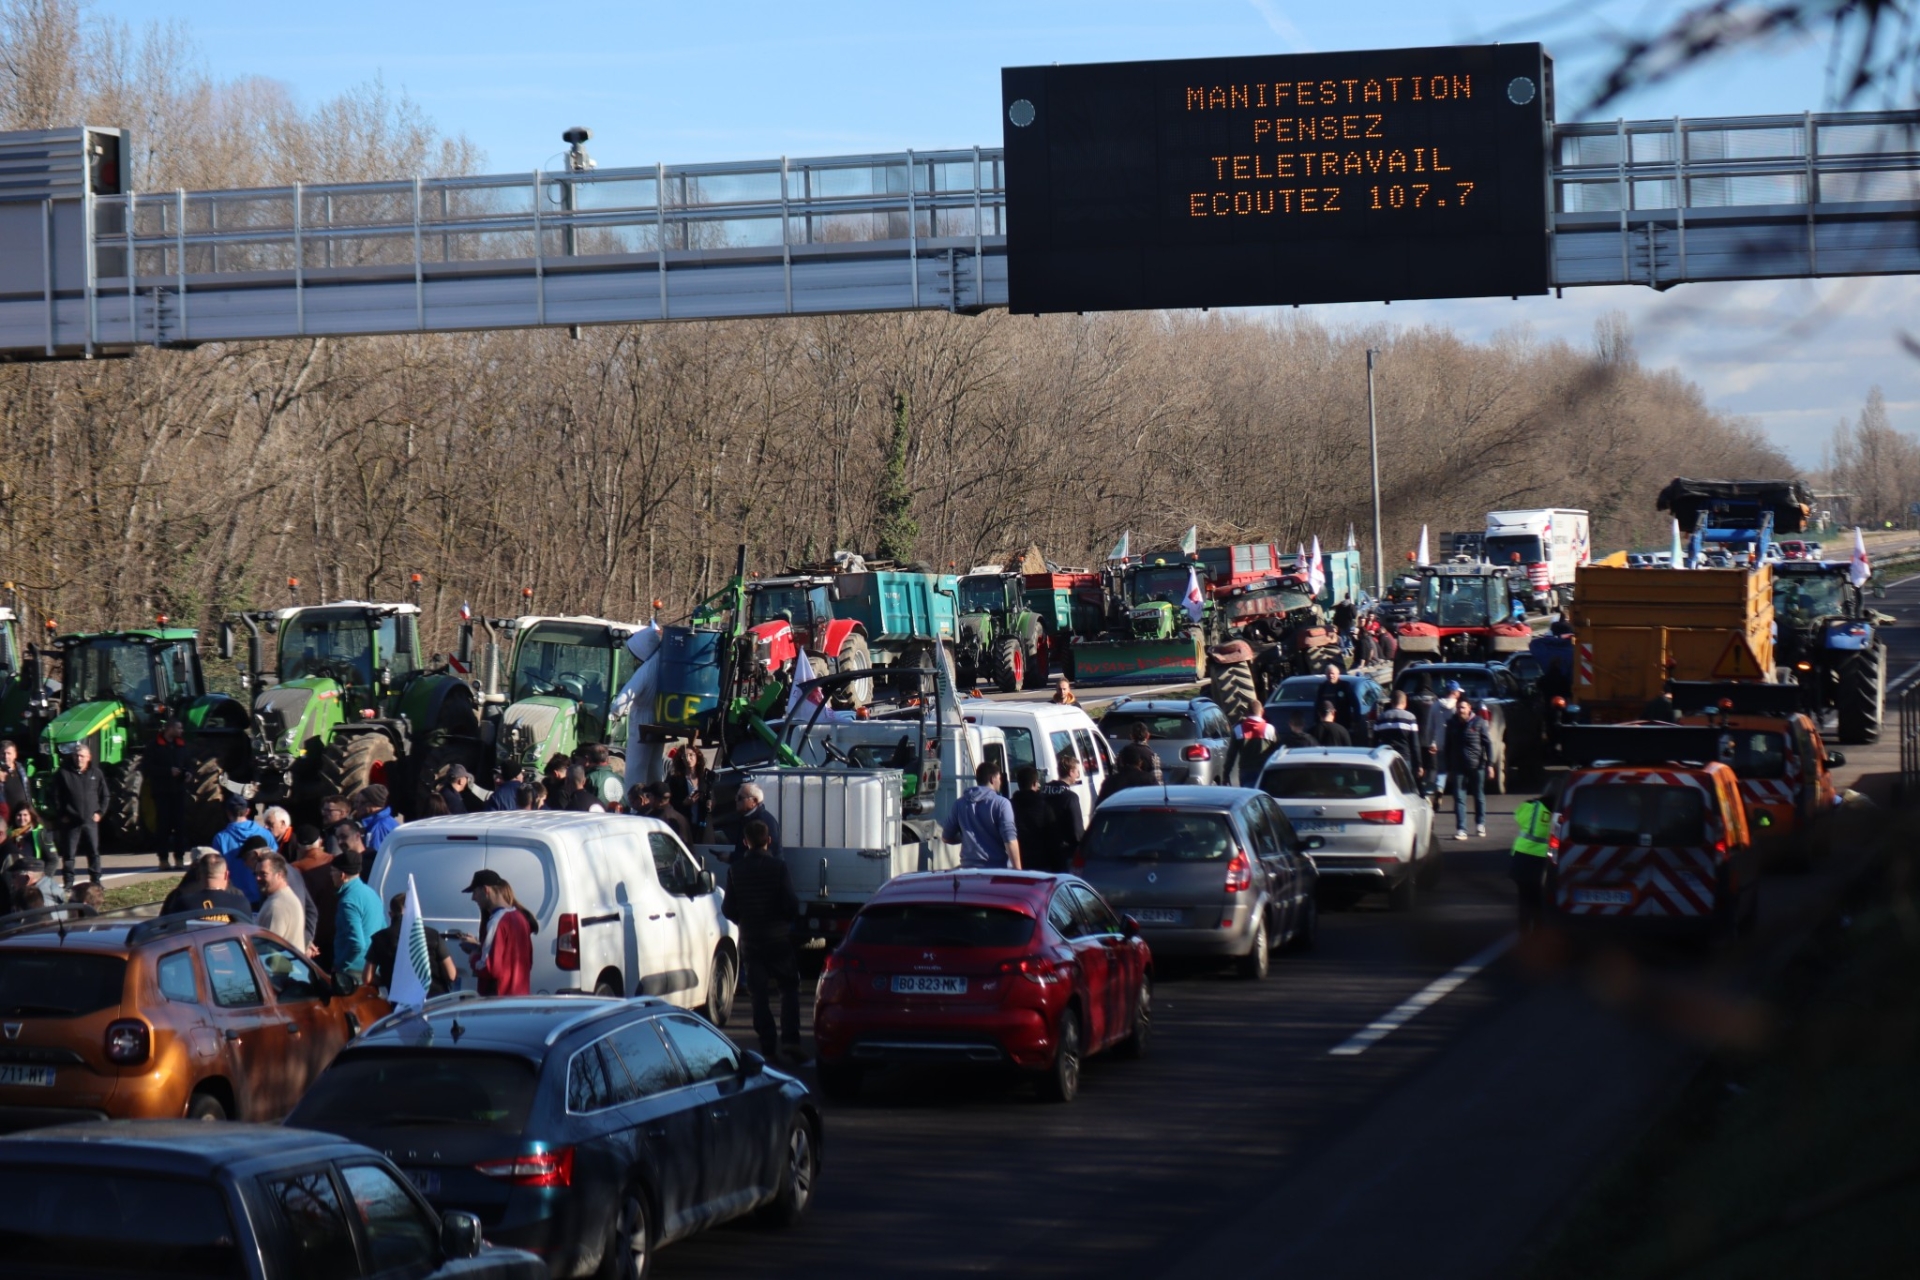 Blocage de l'A42 au niveau de Vaulx-en-Velin : revivez la mobilisation heure par heure